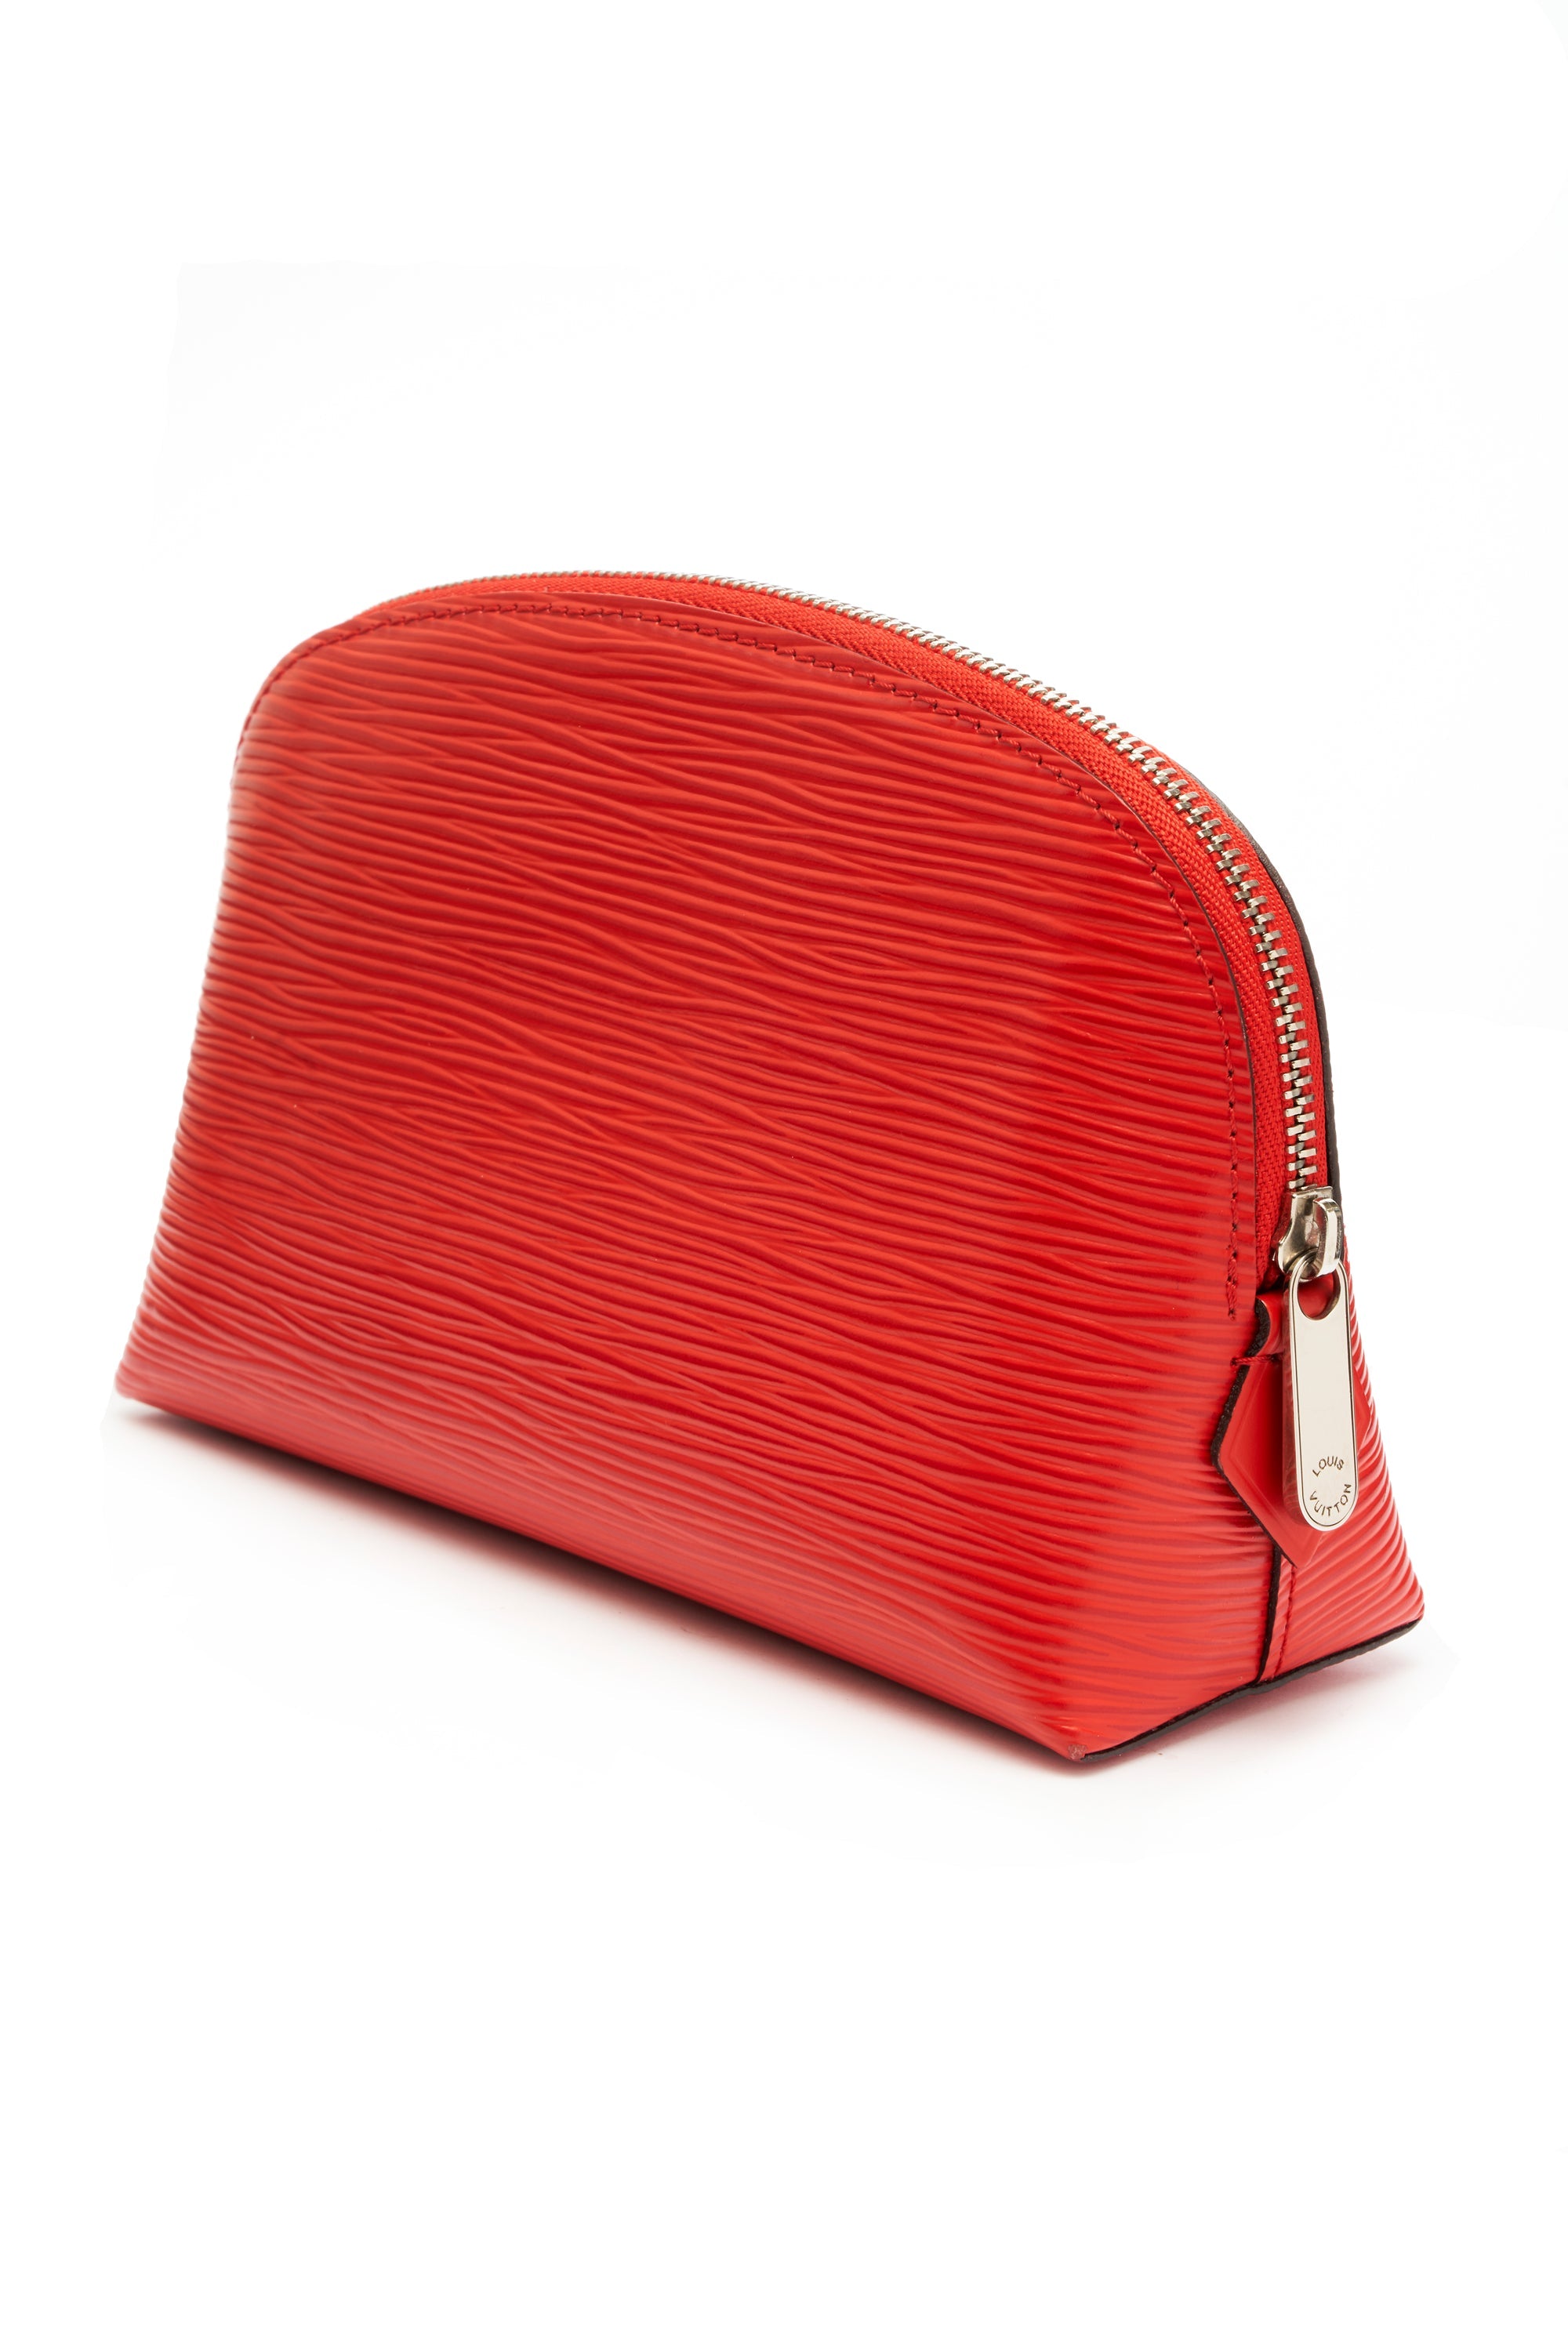 Louis Vuitton Coquelicot Red Epi Leather Cosmetics Pochette